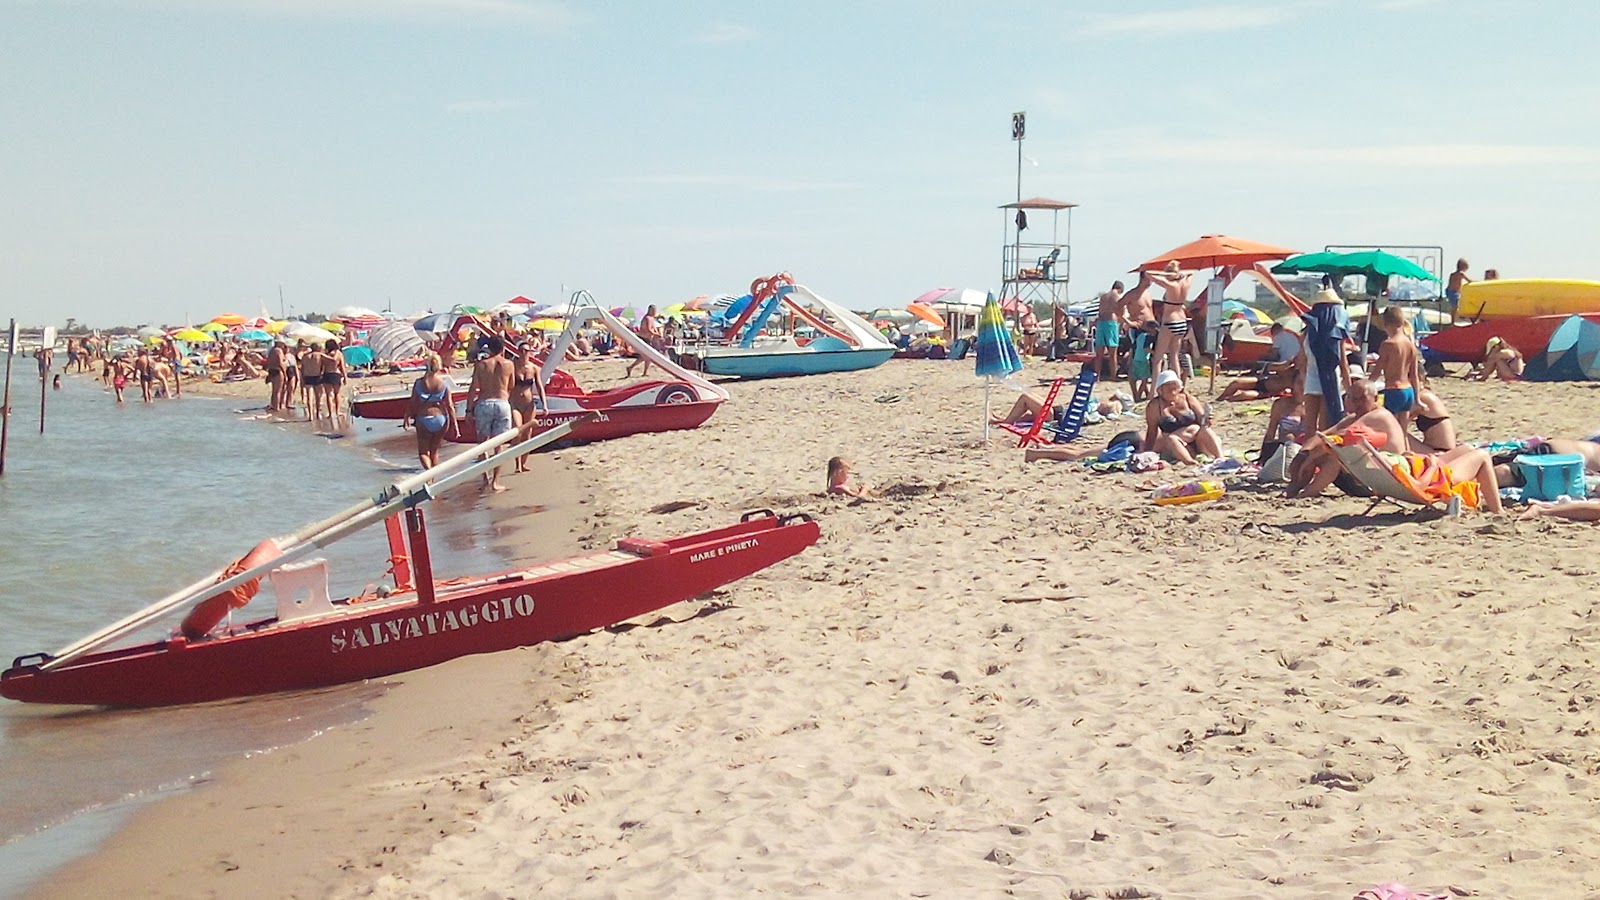 Foto af Spiaggia di Comacchio - populært sted blandt afslapningskendere